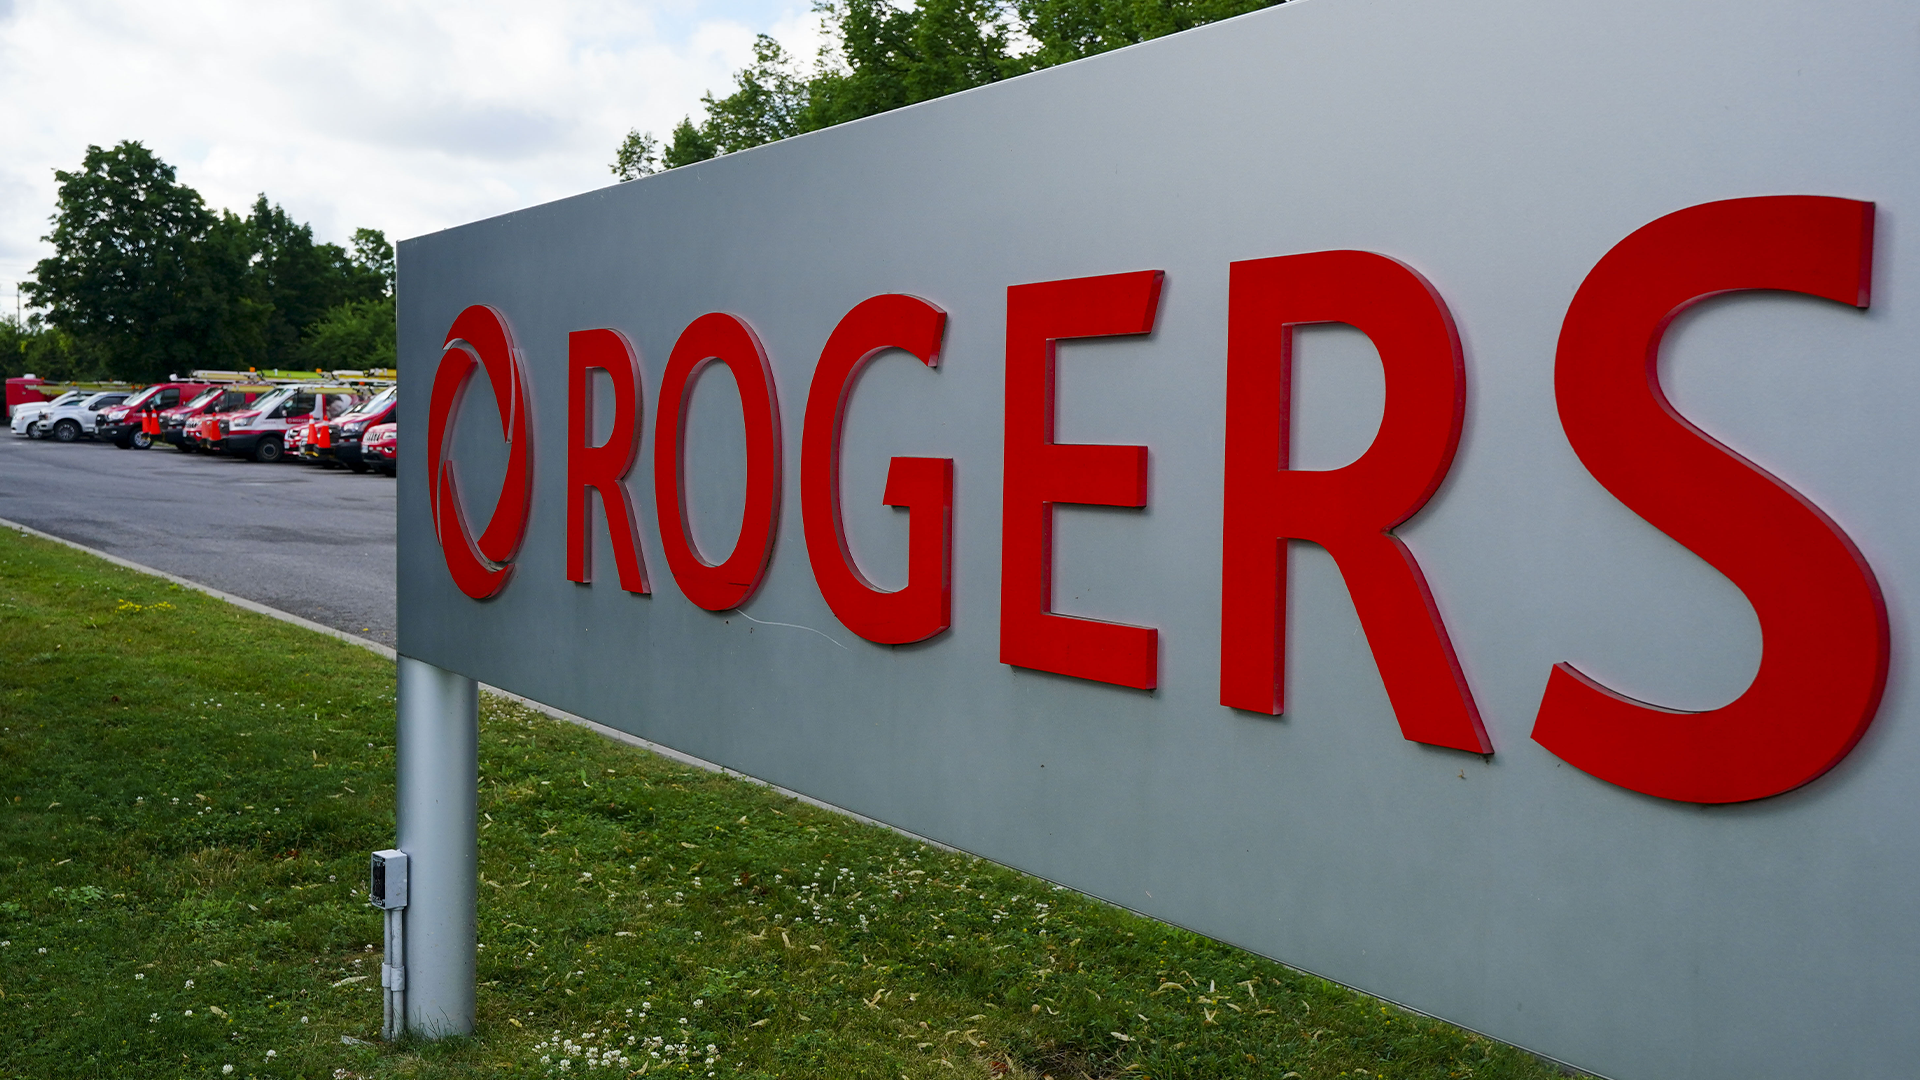 Rogers prétend qu'elle n'aurait pas pu rétablir les services d'urgence plus rapidement lors de la panne de service généralisée survenue au début du mois et qui a paralysé les réseaux de l'entreprise et touché des millions de clients à travers le Canada.